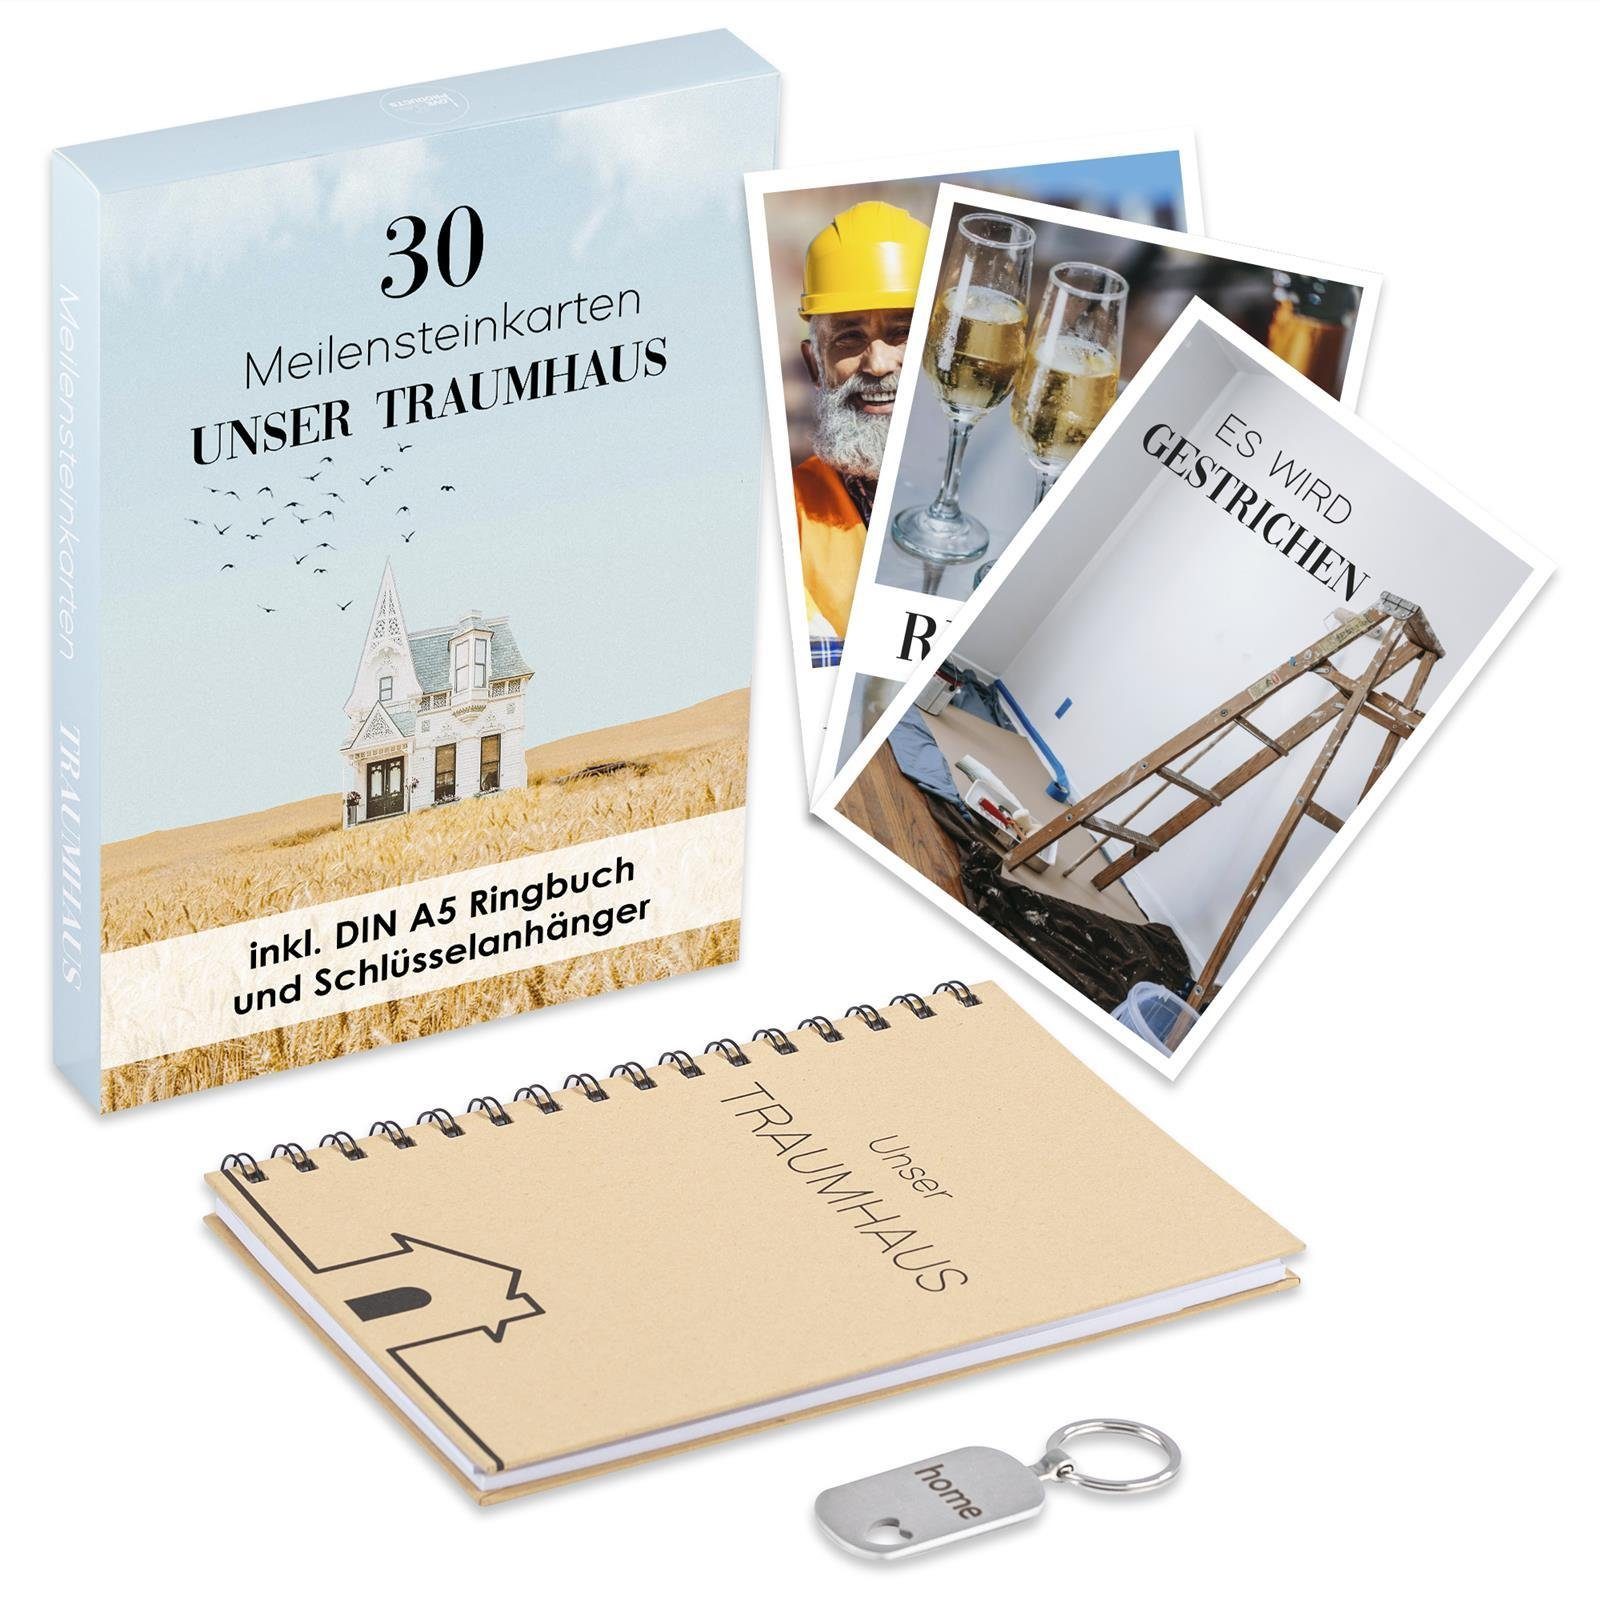 ILP Postkarte ILP Meilensteinkarten Hausbau modern (wp), Inkl. Ringbuch und Schlüsselanhänger